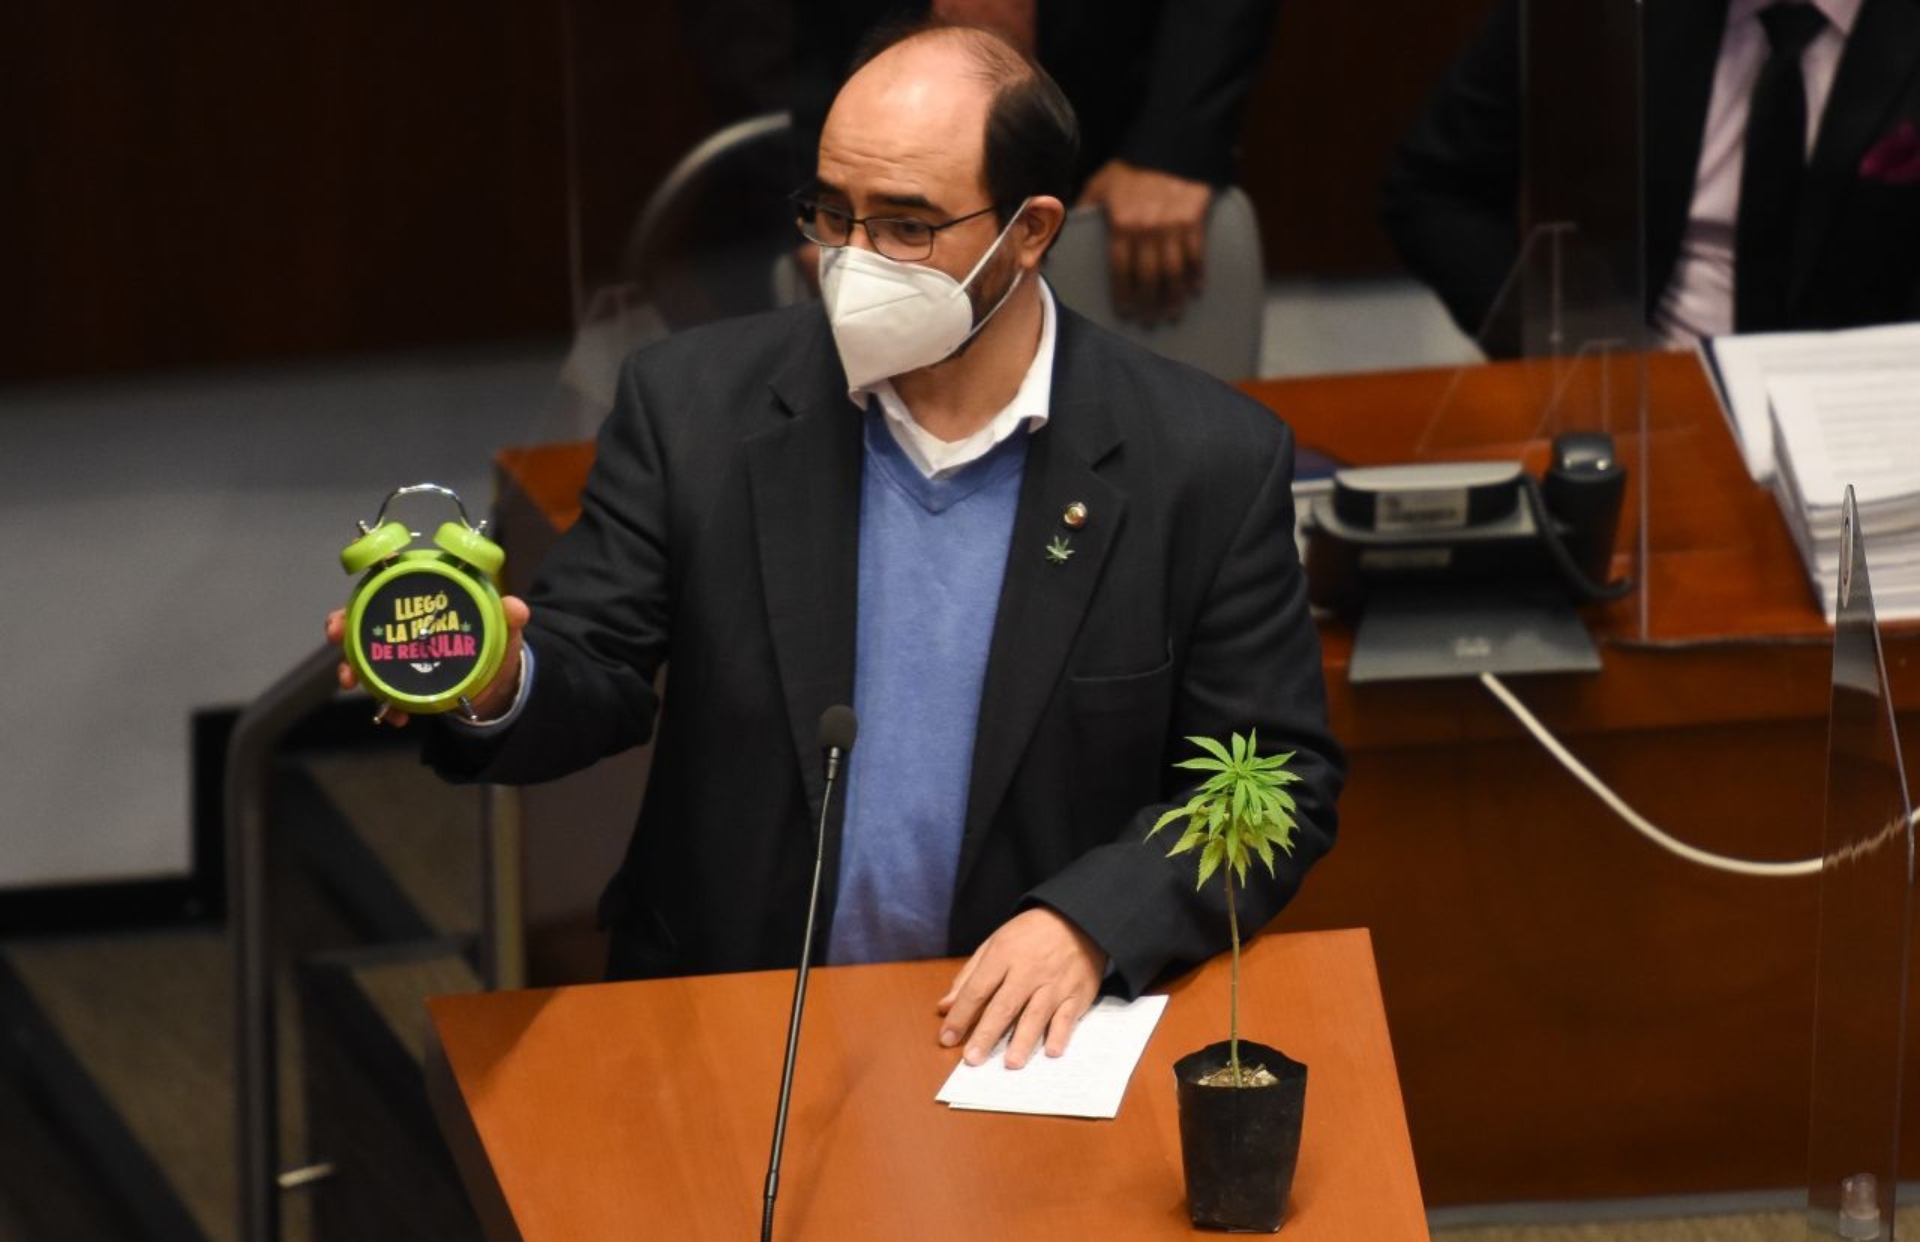 Álvarez Icaza también mostró en la tribuna una planta de marihuana, de las cuales se vieron varias en el Pleno del Senado (Foto: Cuartoscuro)